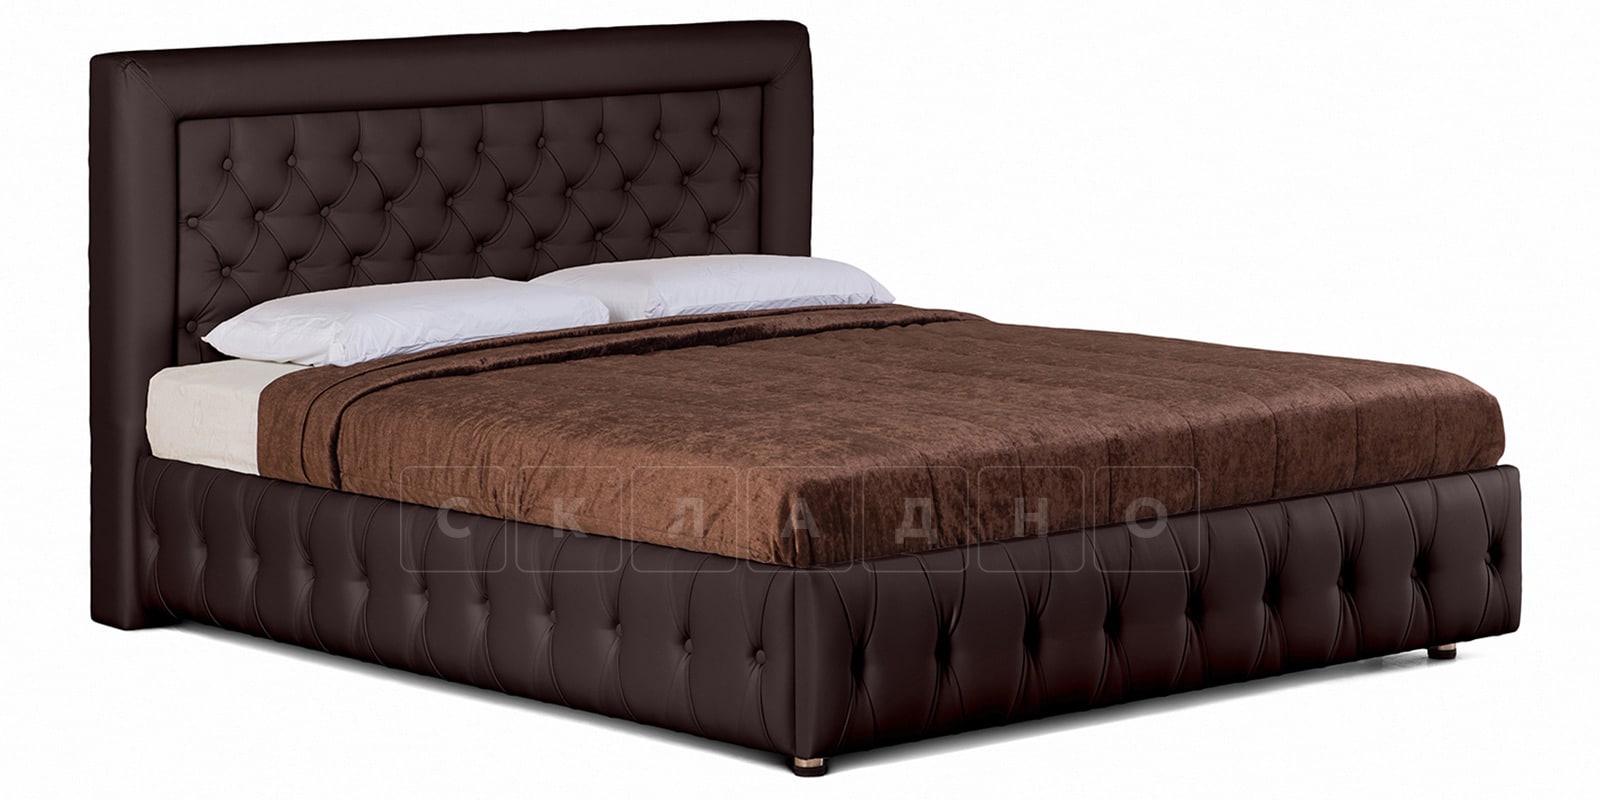 Мягкая кровать Малибу 160 см экокожа шоколадного цвета вариант 7 фото 1 | интернет-магазин Складно